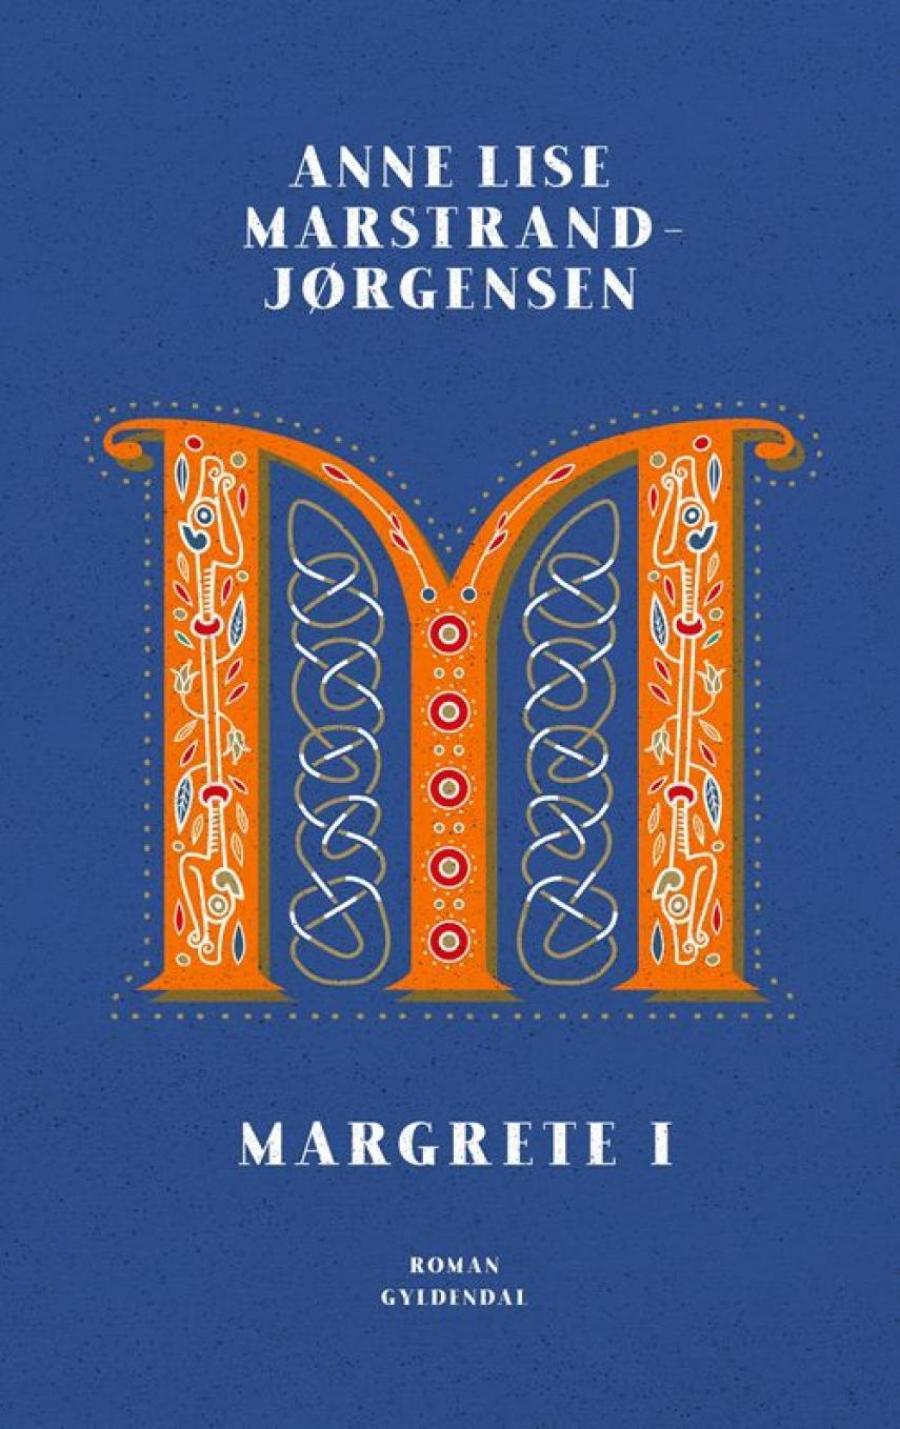 Forsiden af bogen Margrete 1